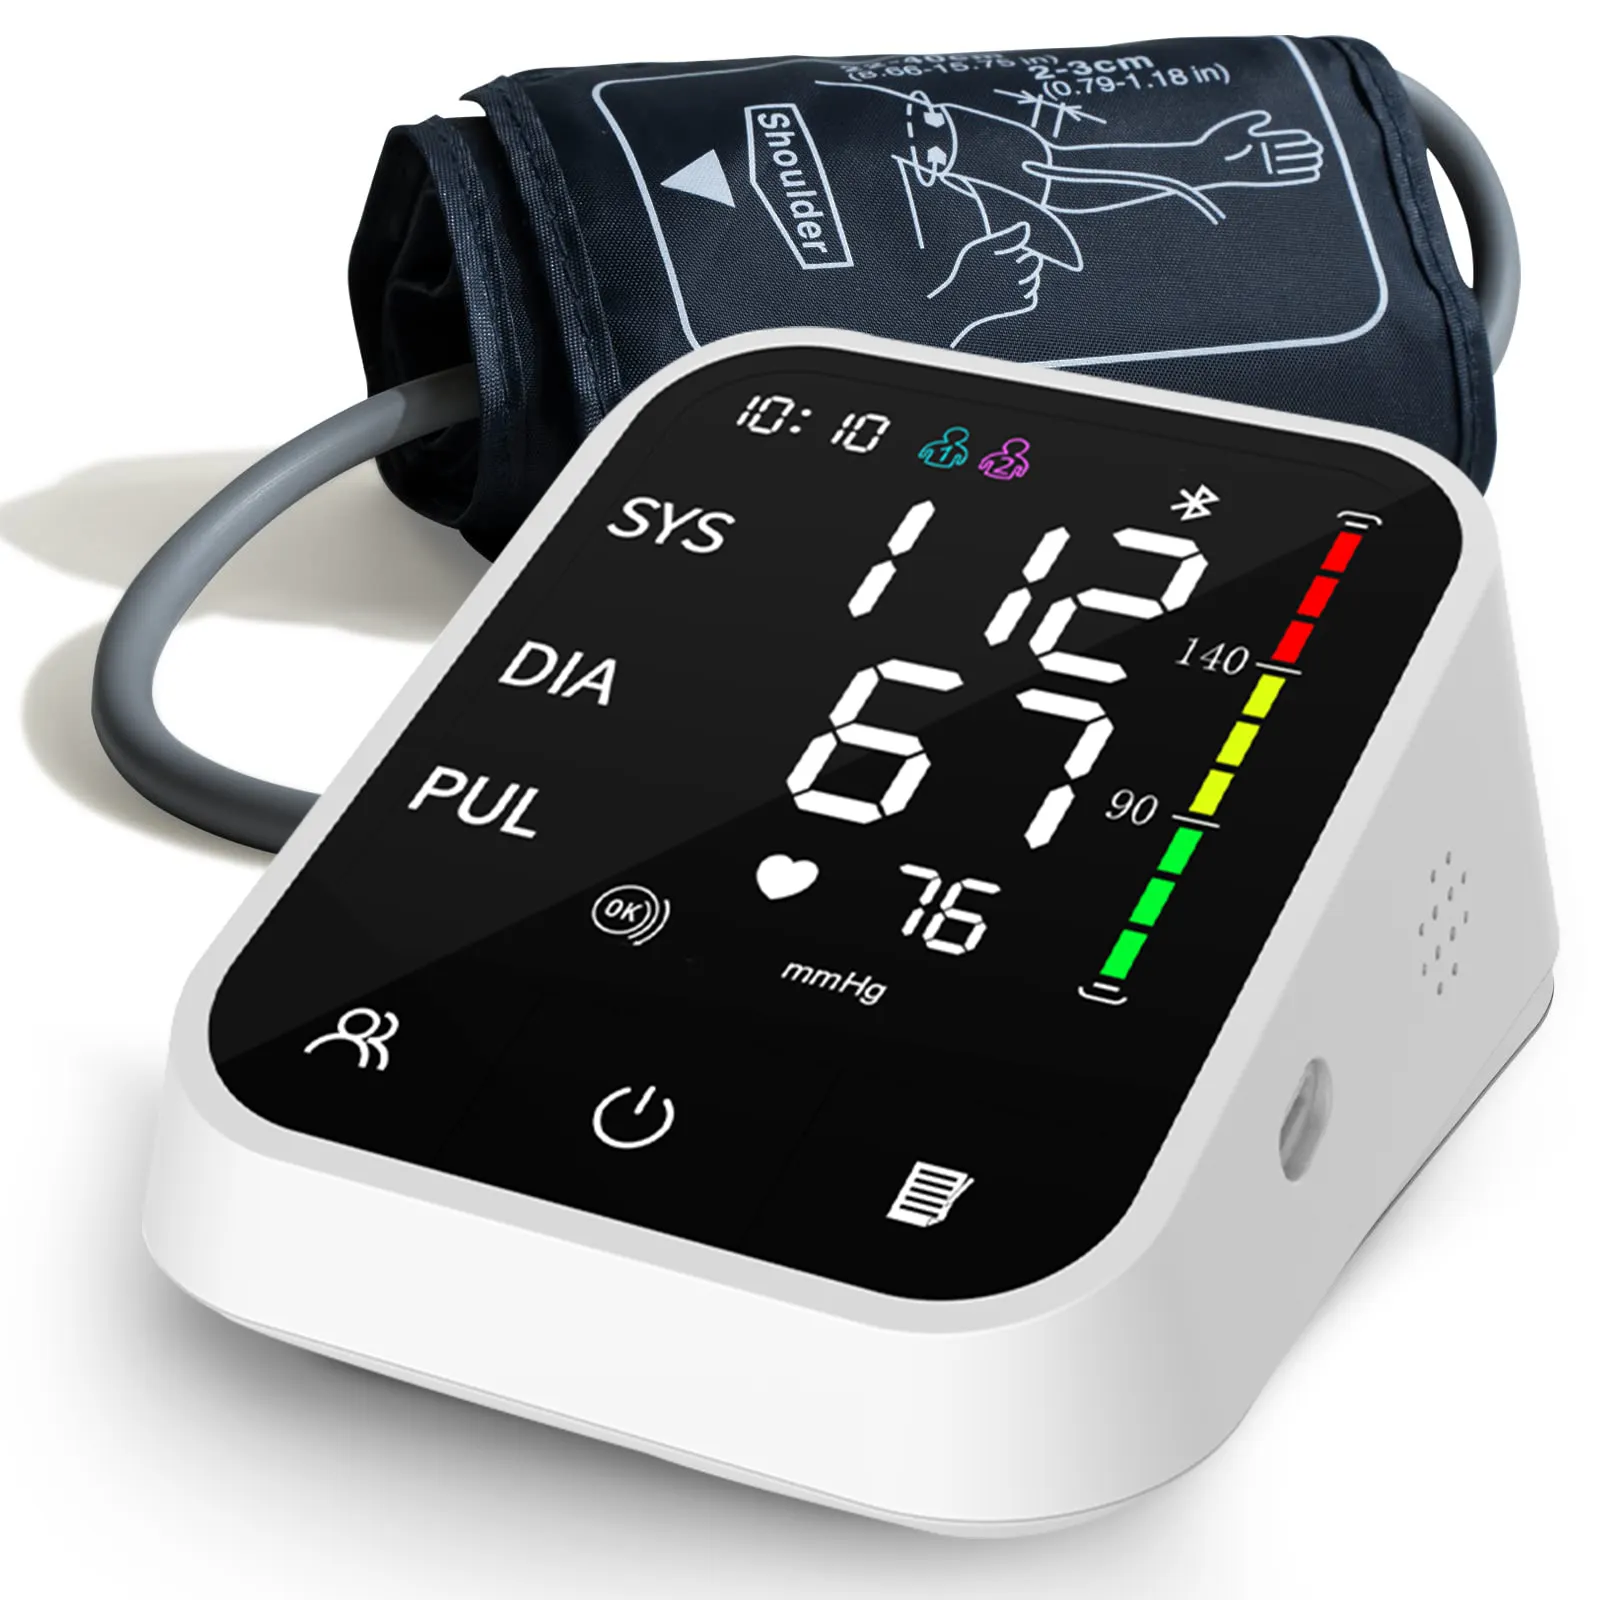 Tensiomètre portatif sans fil pour le haut du bras, tensiomètre numérique, moniteur de pression artérielle Bluetooth